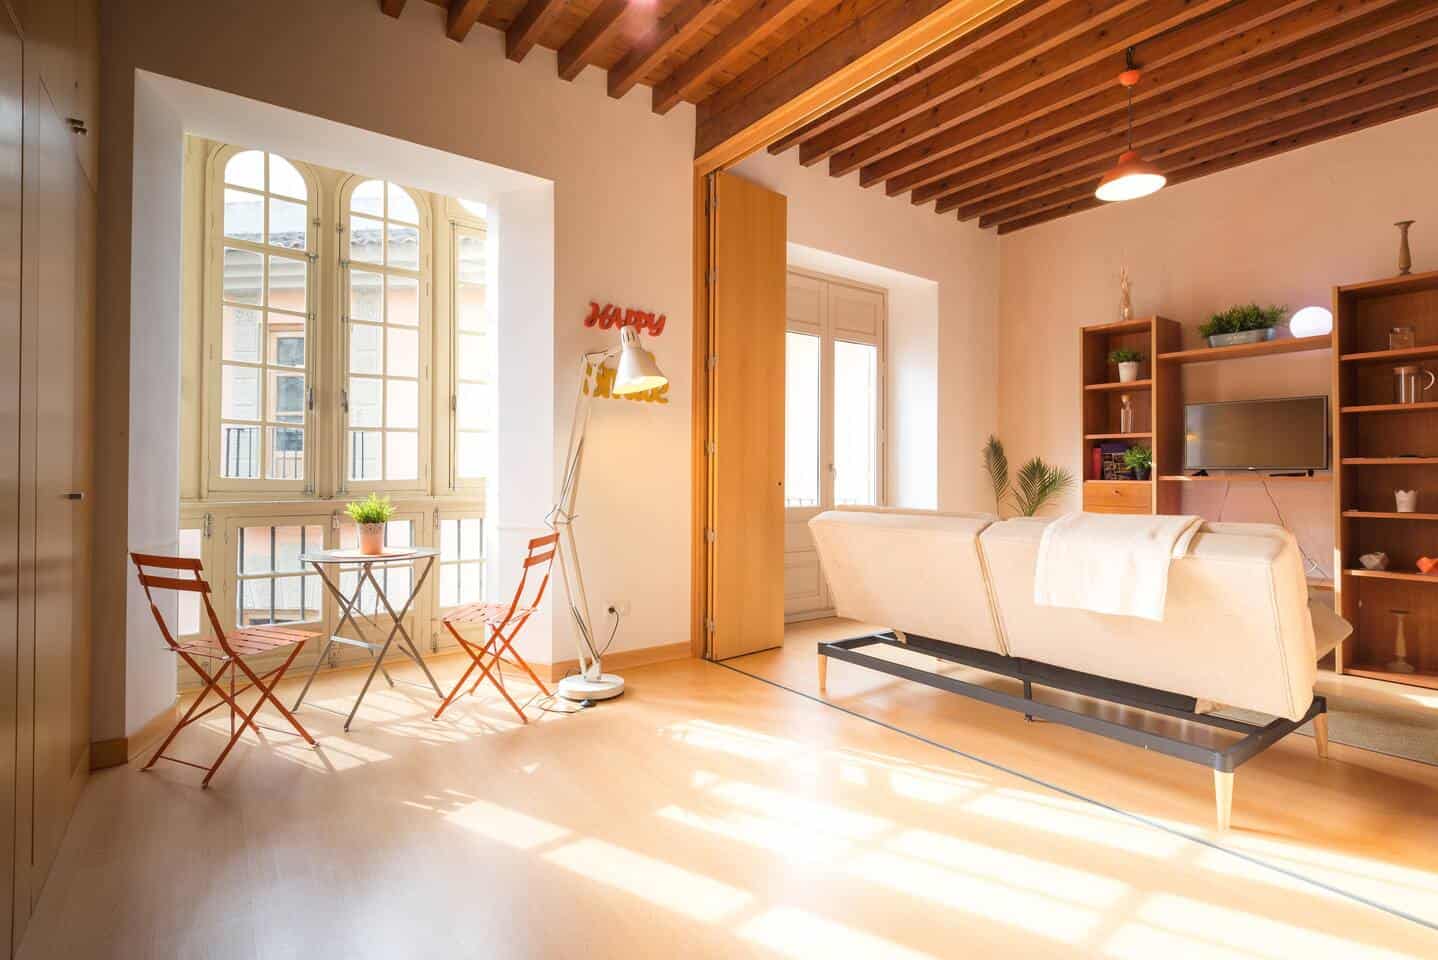 Image of Airbnb rental in Málaga, Spain